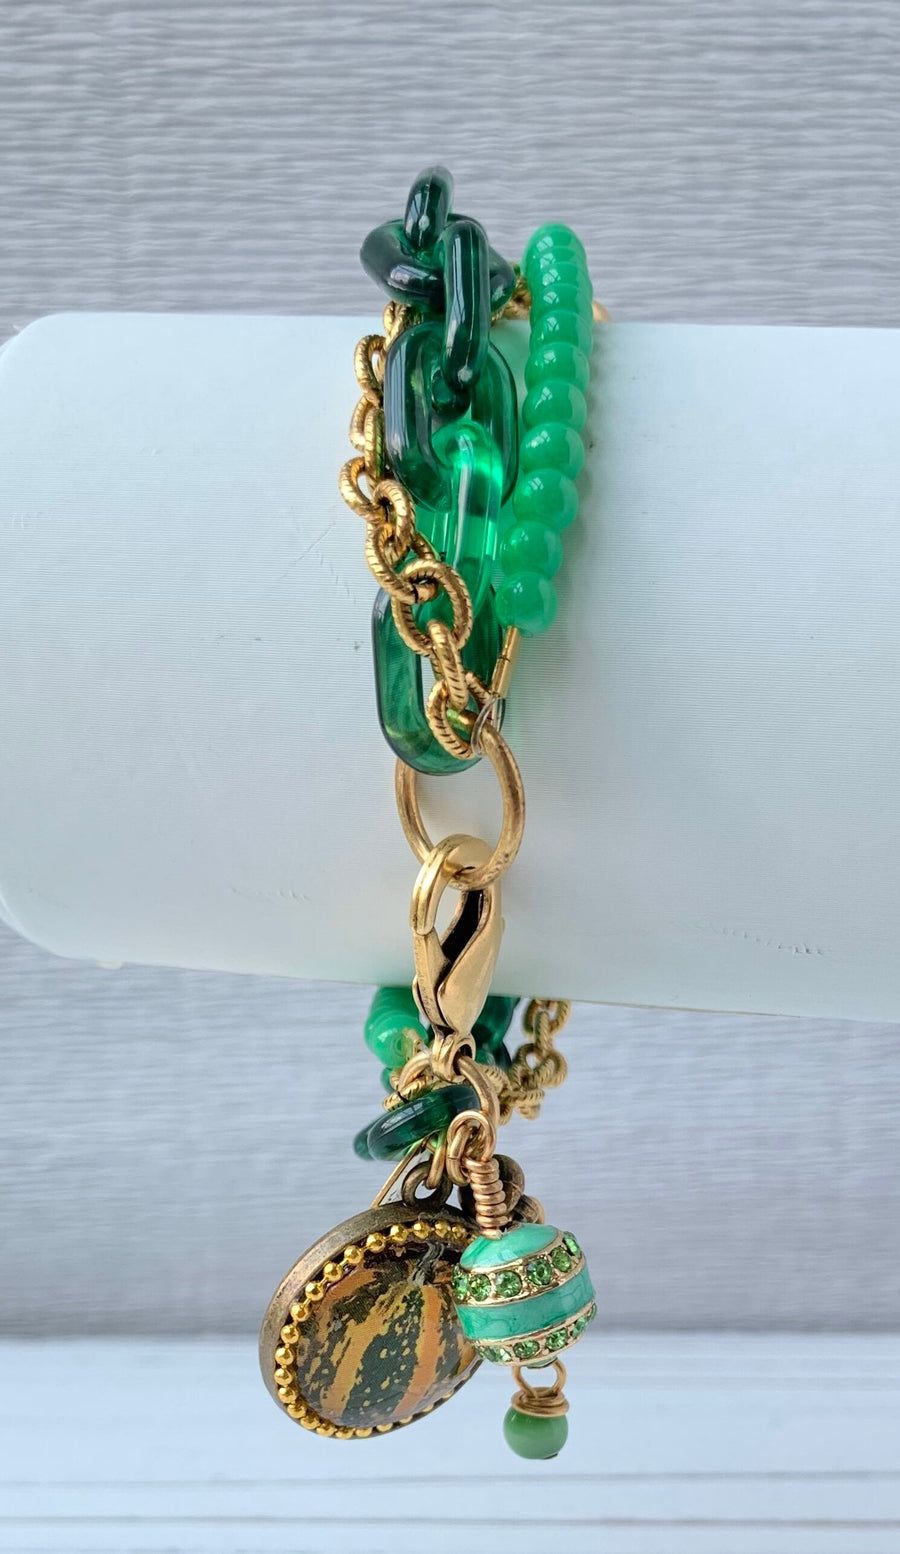 Lenora Dame Kabocha Multi-strand Fall Bracelet Set